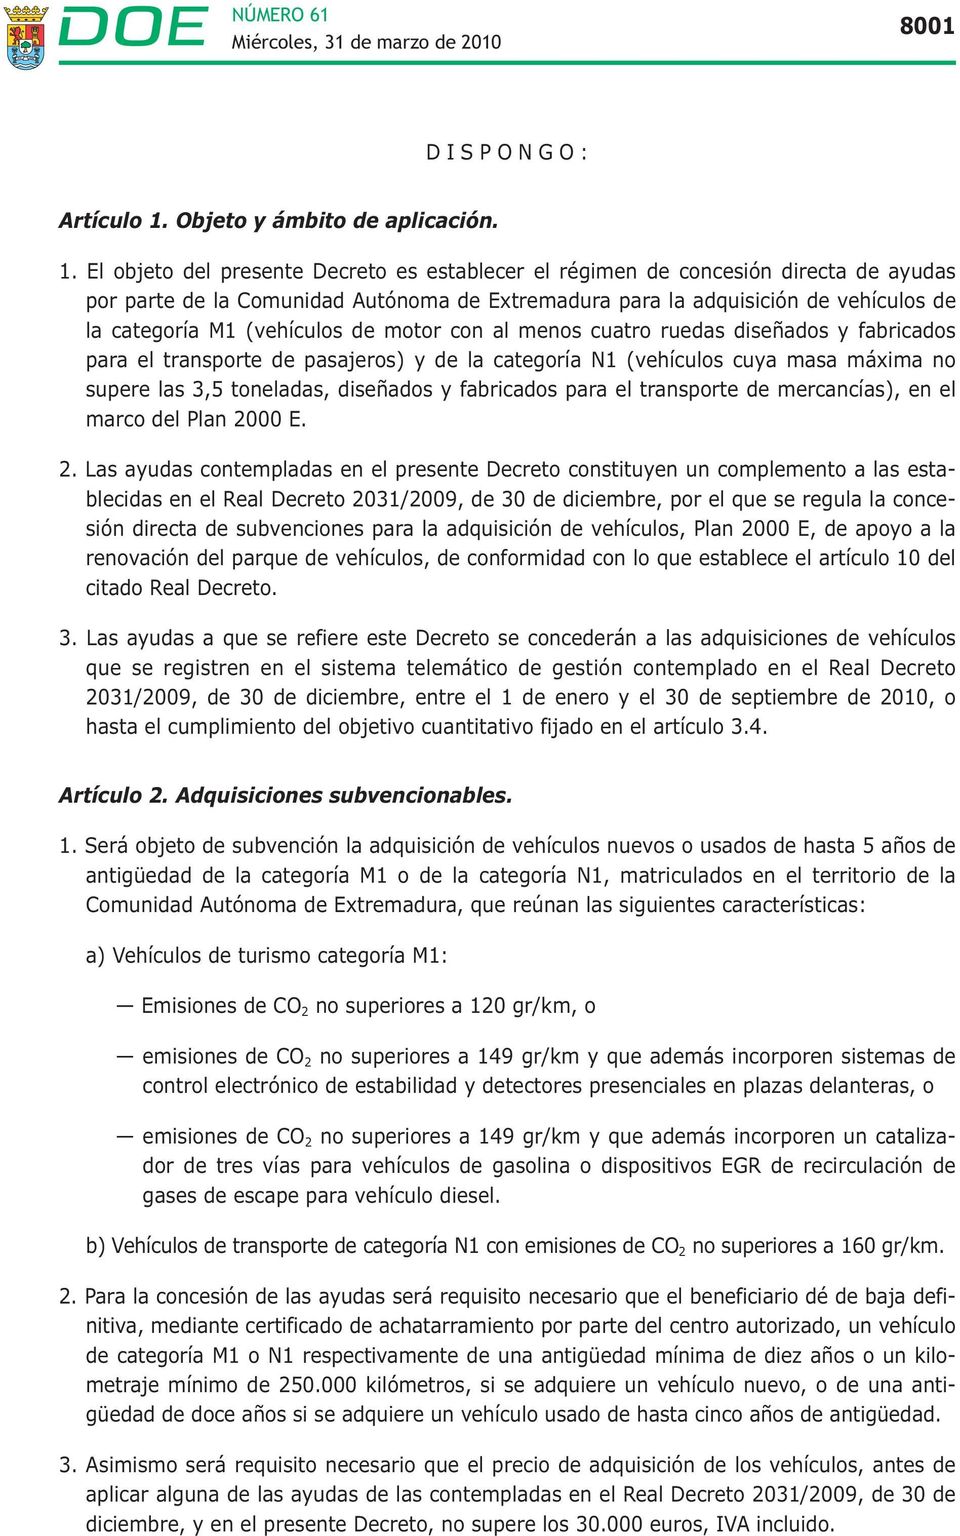 El objeto del presente Decreto es establecer el régimen de concesión directa de ayudas por parte de la Comunidad Autónoma de Extremadura para la adquisición de vehículos de la categoría M1 (vehículos